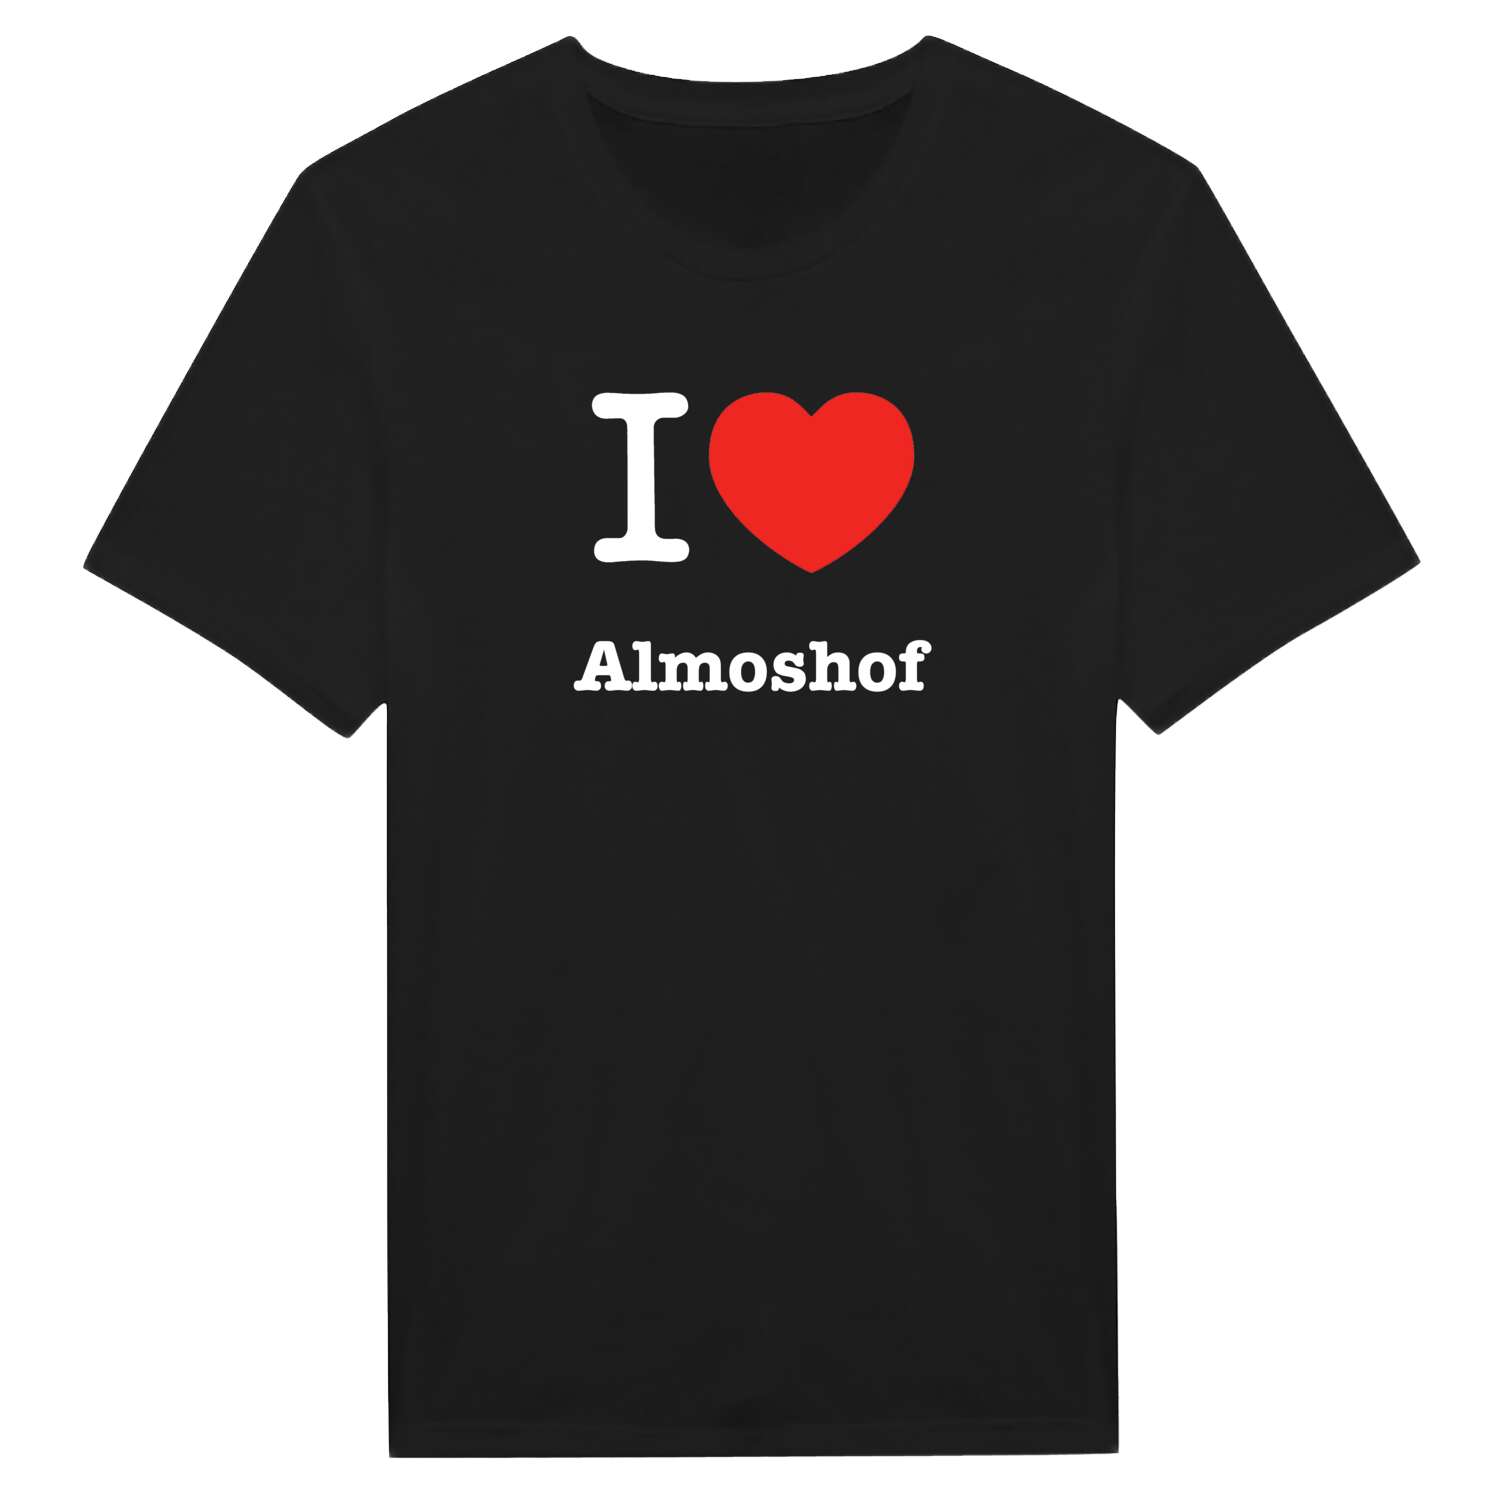 Almoshof T-Shirt »I love«